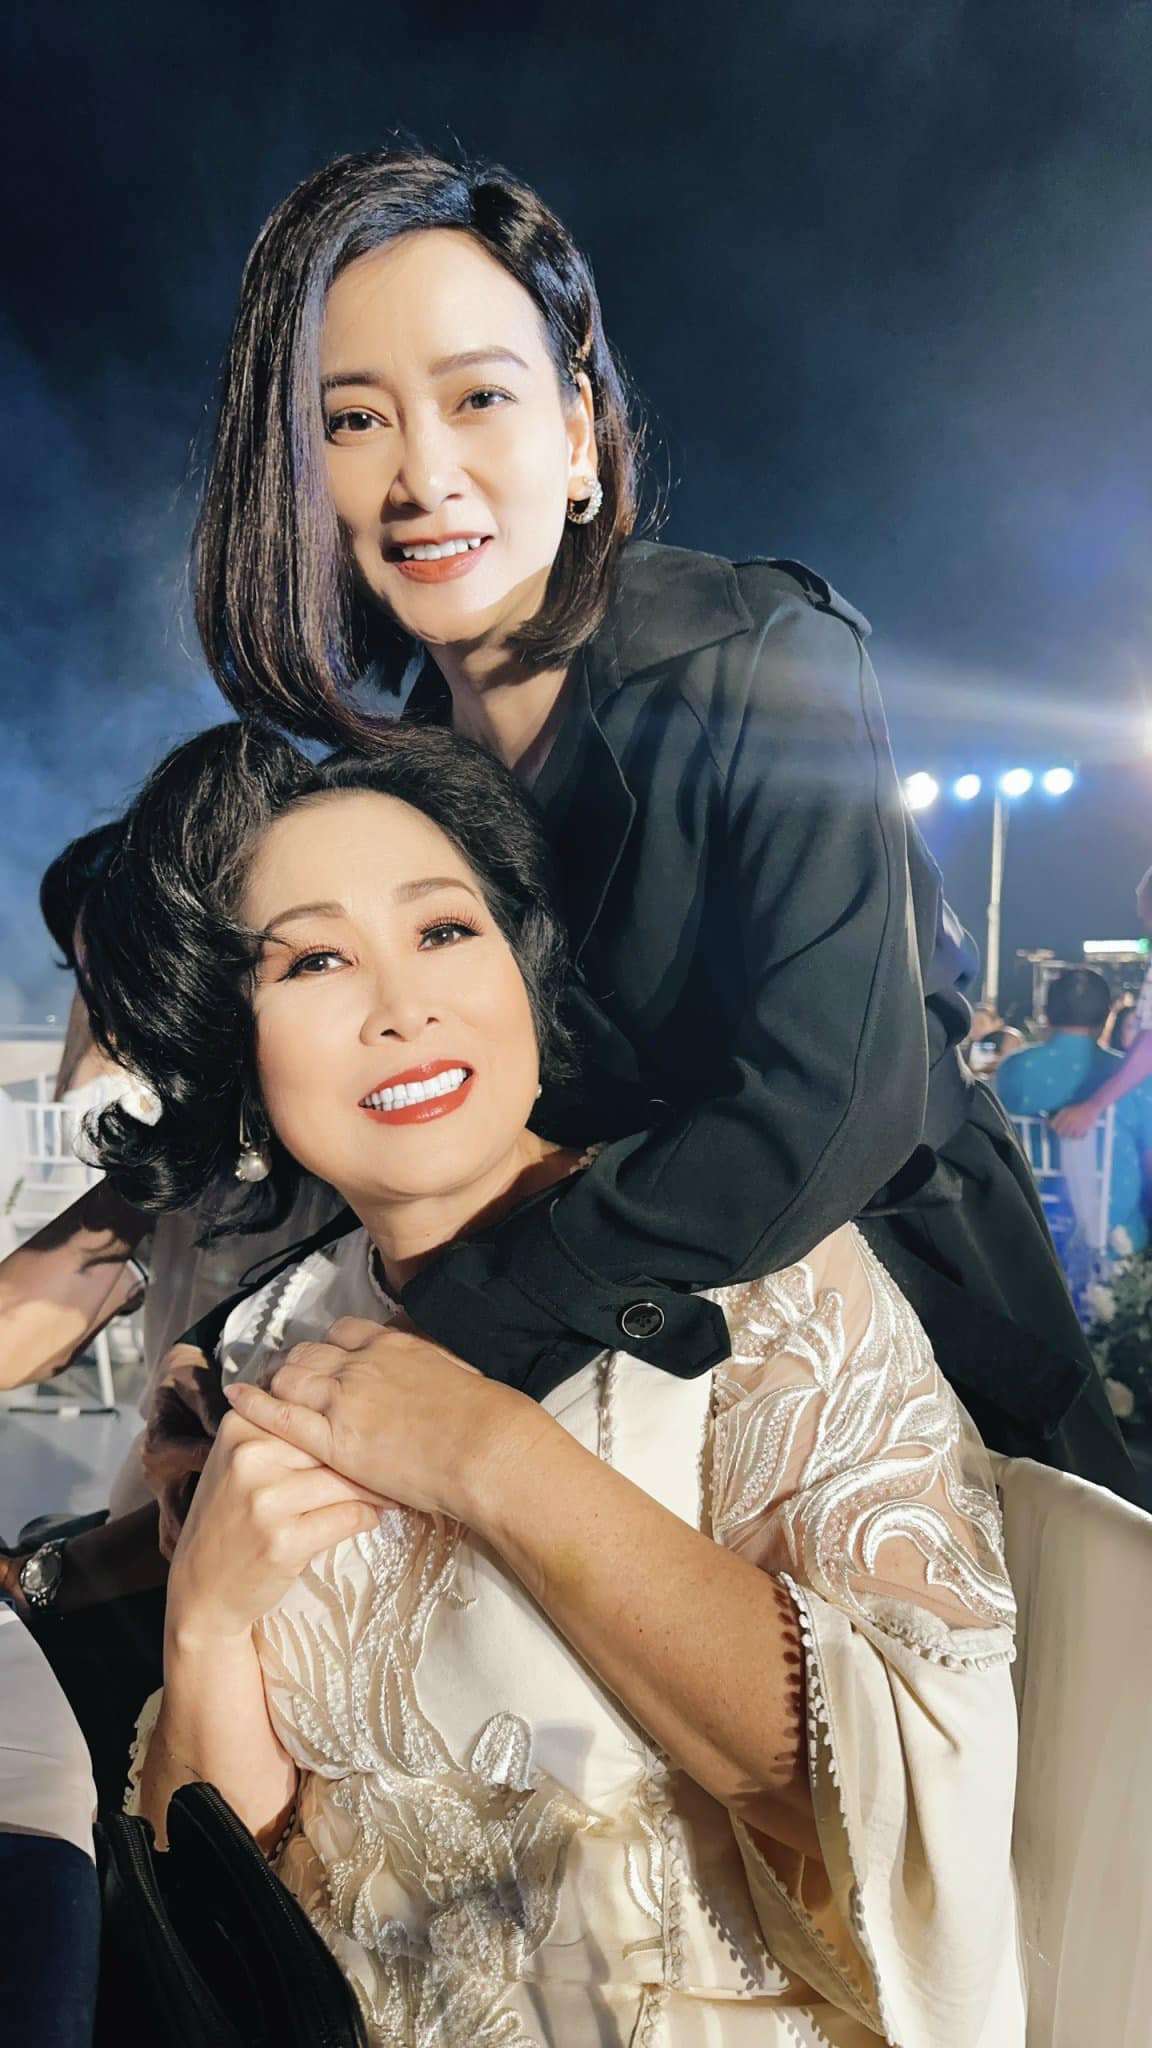 Hồng Vân, Lê Phương dự đám cưới của đạo diễn phim 'Gia đình hòa thuận' - Ảnh 3.